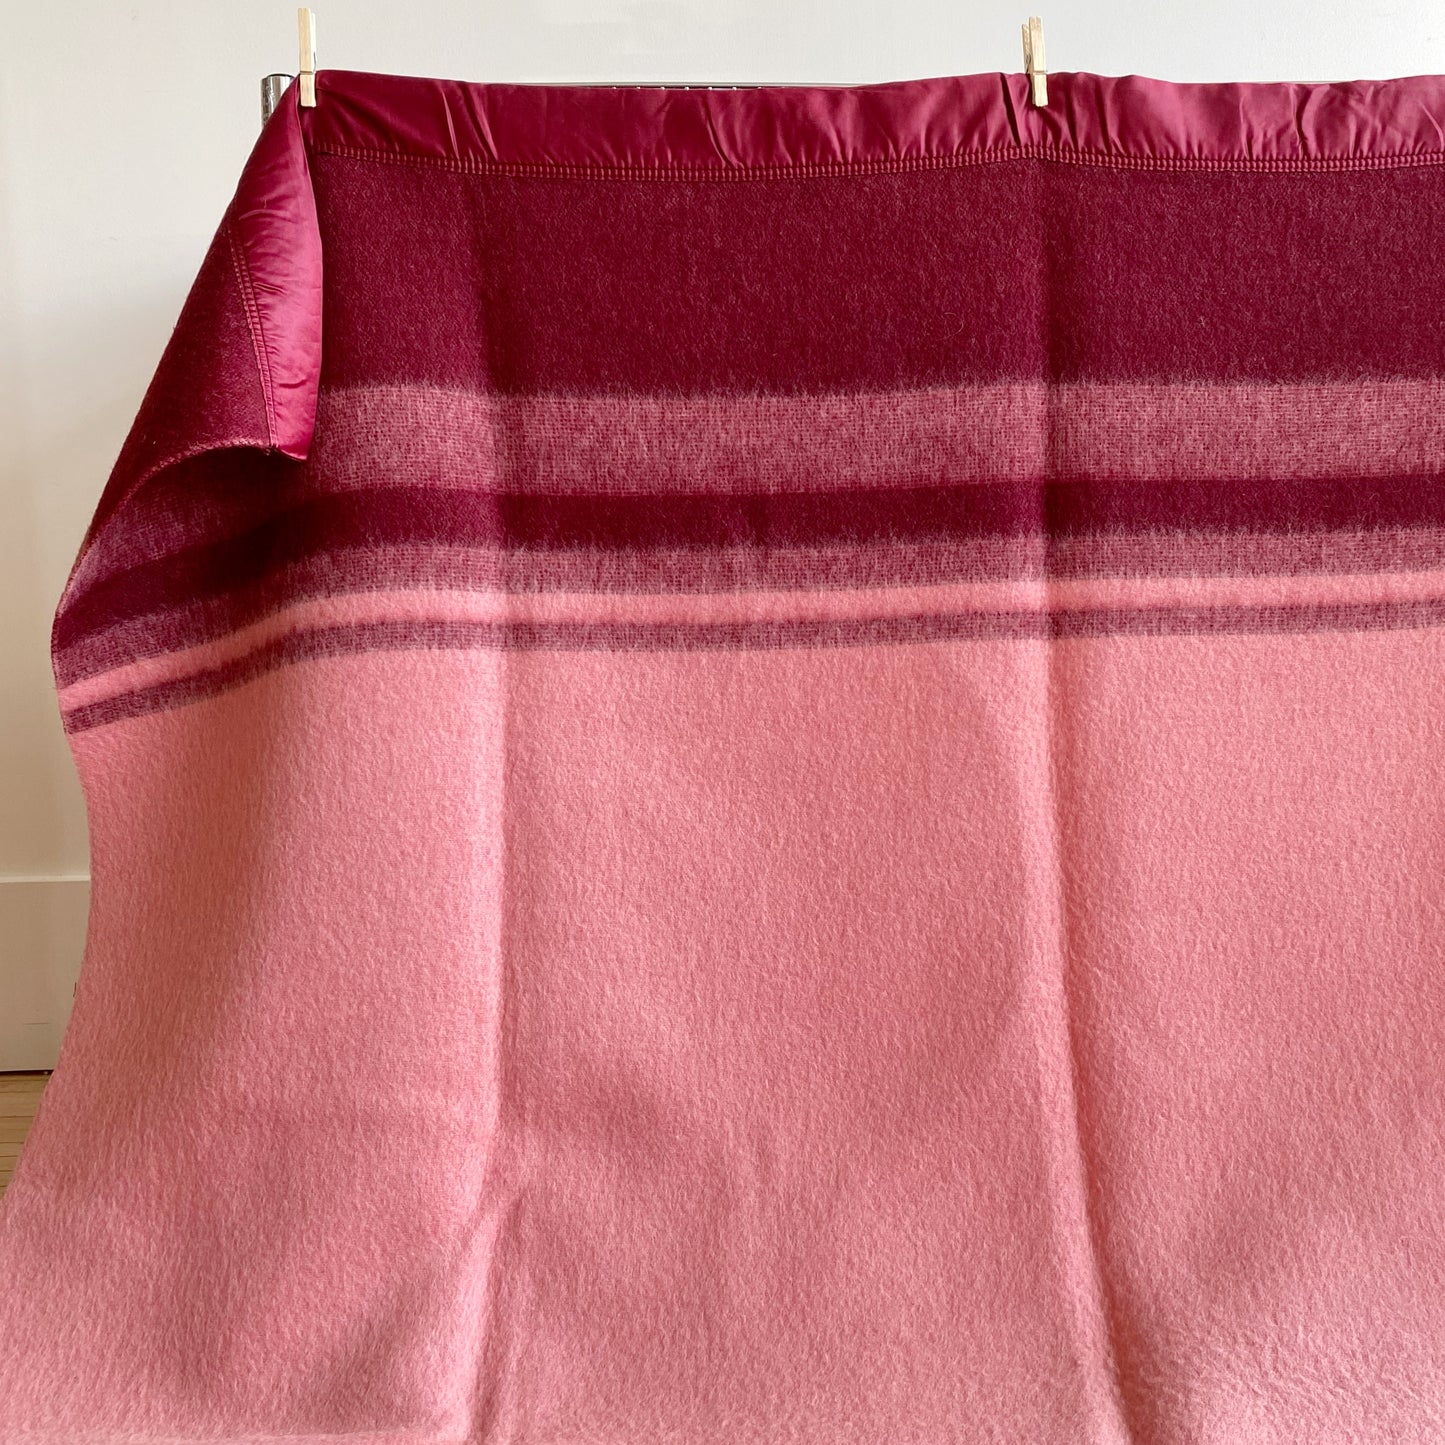 Vintage Wool Blanket by Faribo- 70x84